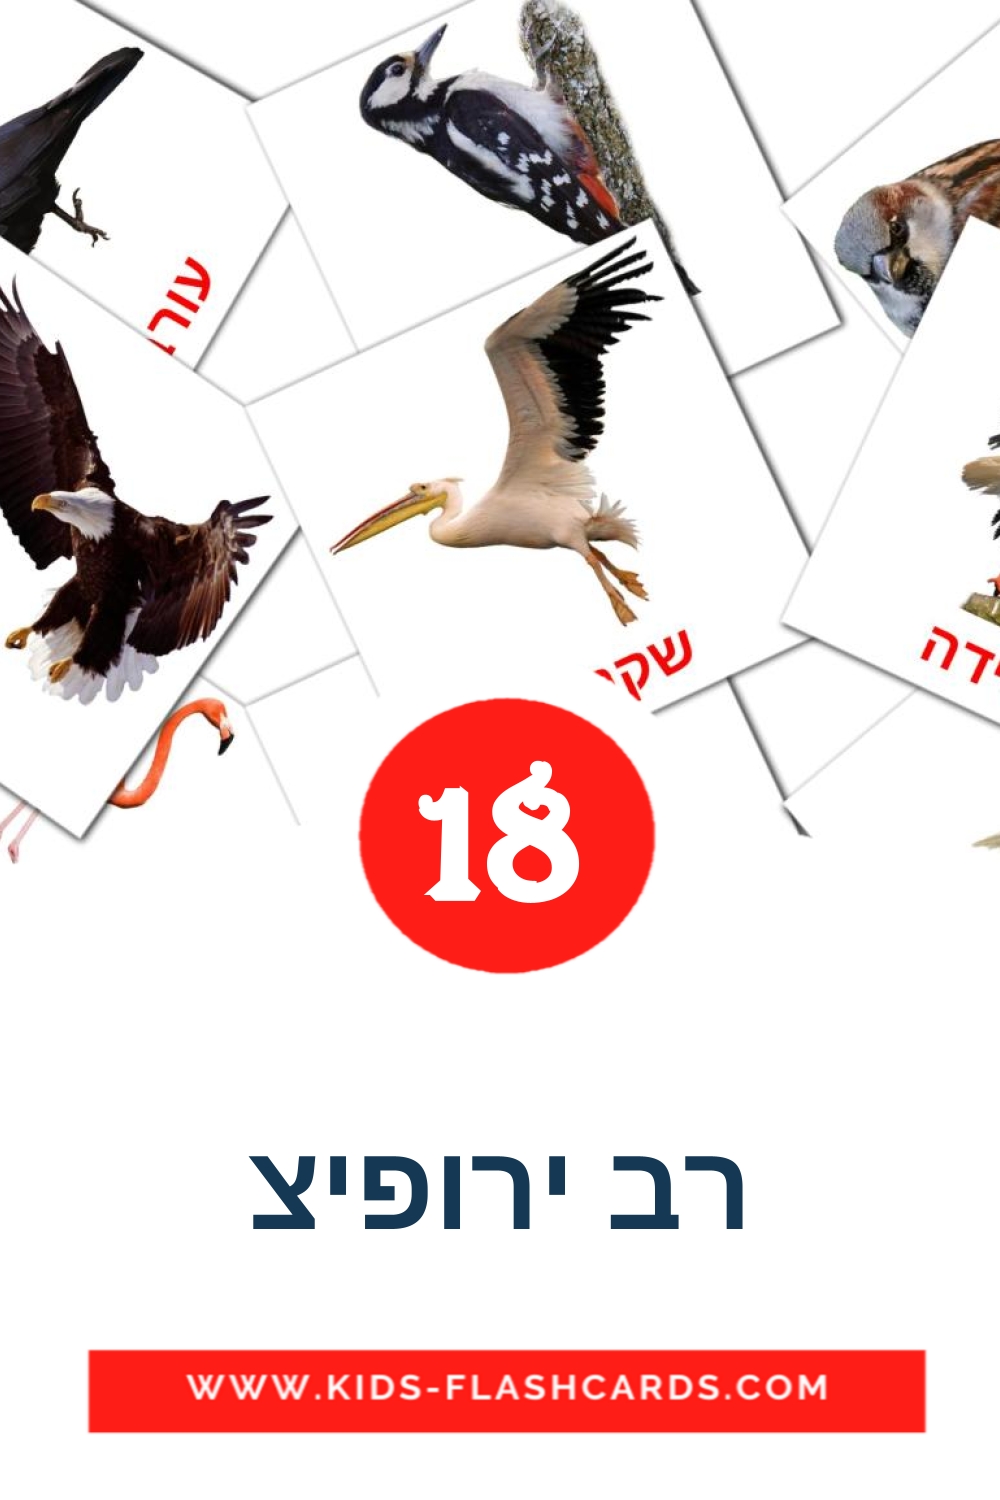 18 cartes illustrées de רב ירופיצ pour la maternelle en hébreu